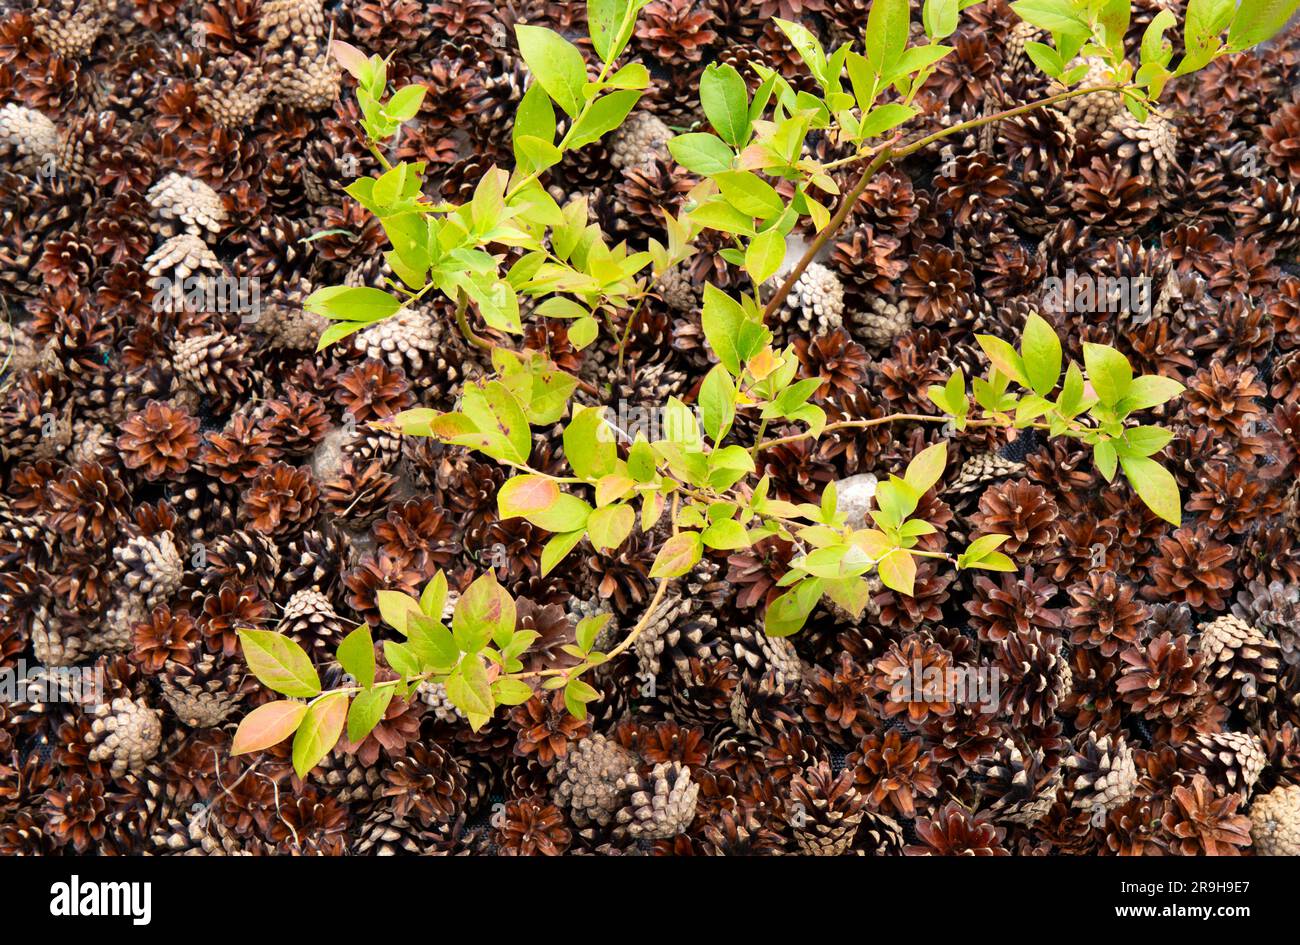 Blaubeerbusch ( Vaccinium corymbosum) im Hausgarten mit Kiefernmulch um ihn herum zur Verbesserung des ph-werts des Bodens. Stockfoto